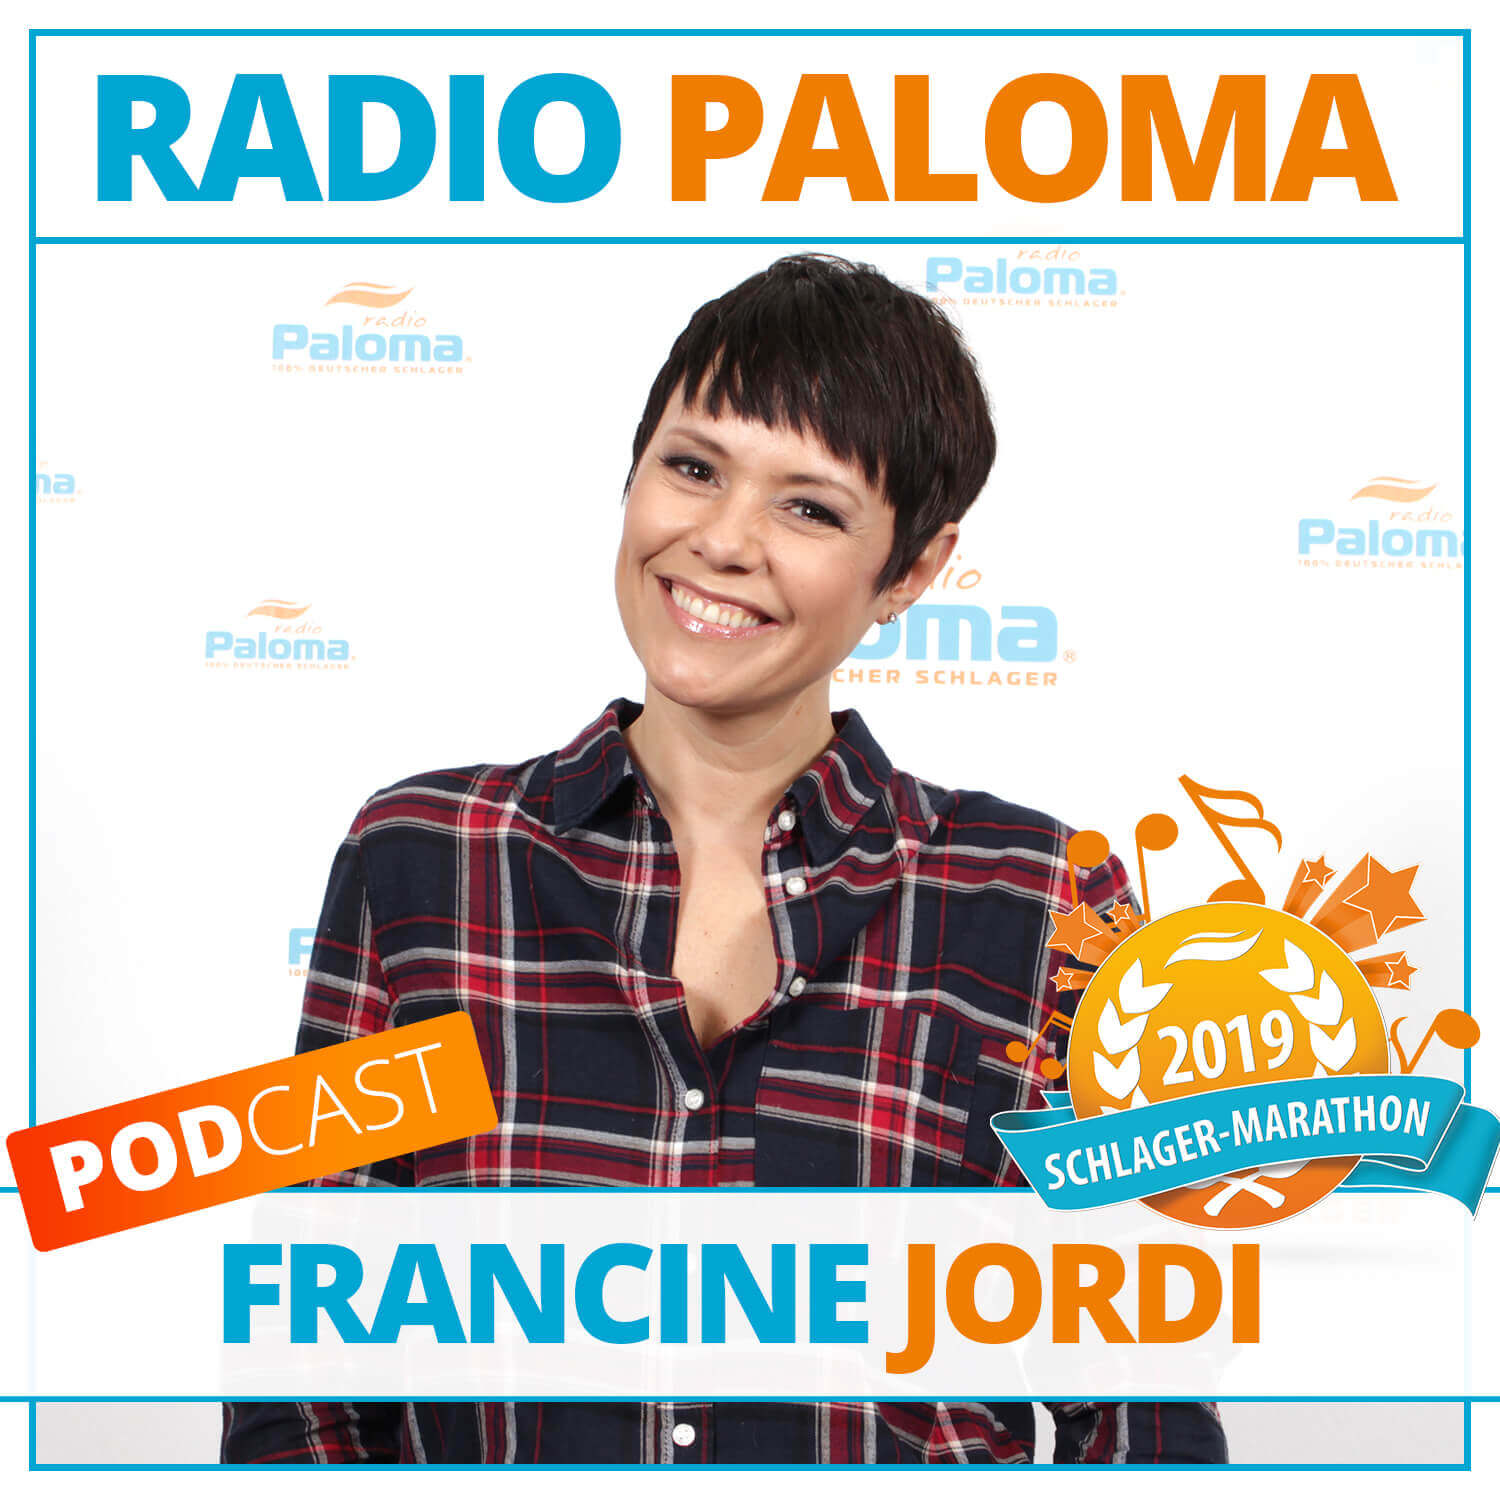 Der Radio Paloma Schlager-Marathon 2019 mit Francine Jordi